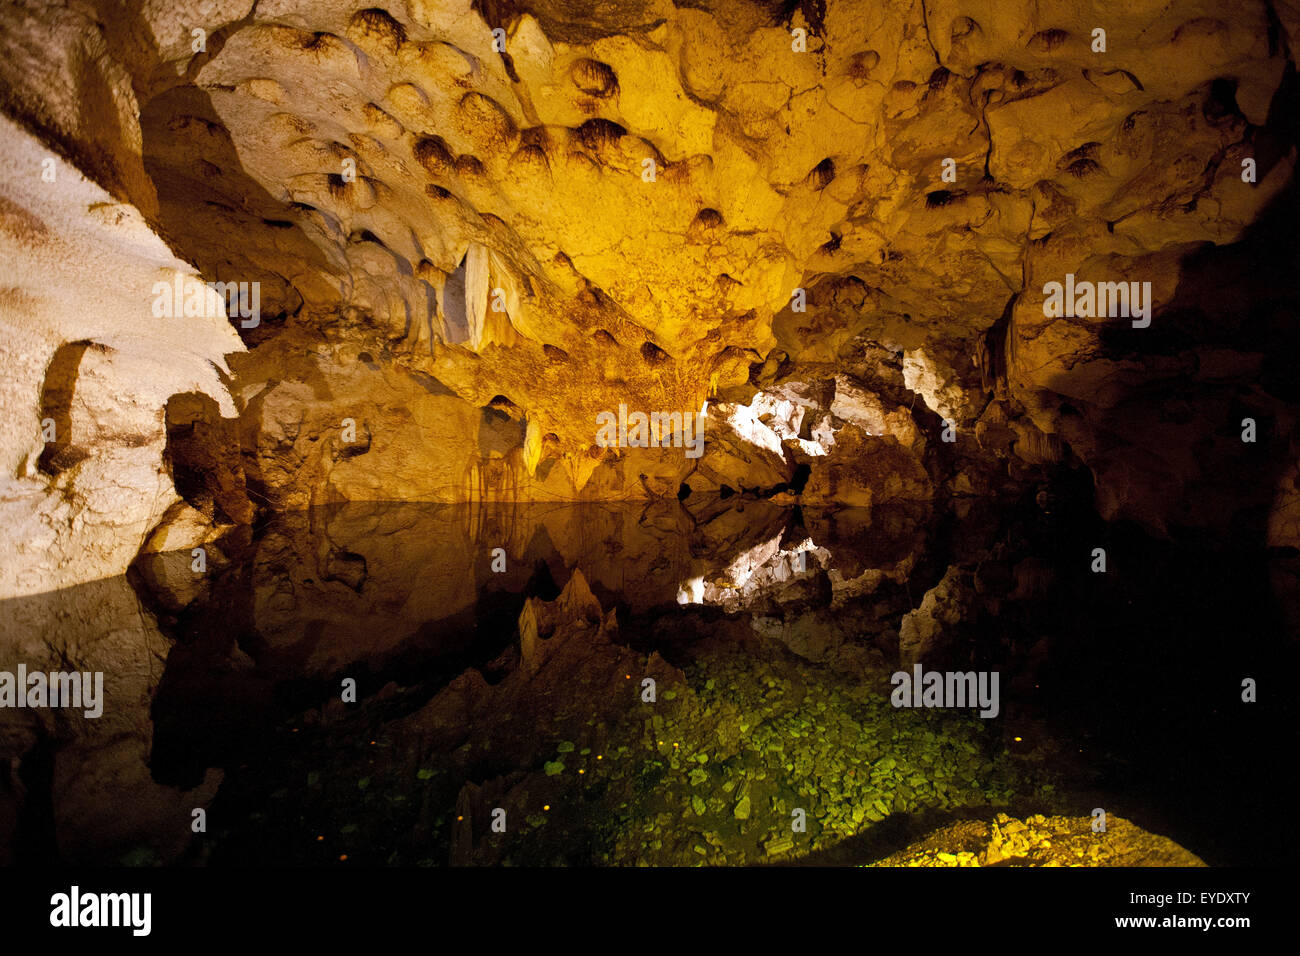 Lac souterrain dans le ventre de la caverne, Green Grotto Caves, Discovery Bay, St Ann, Jamaïque Banque D'Images